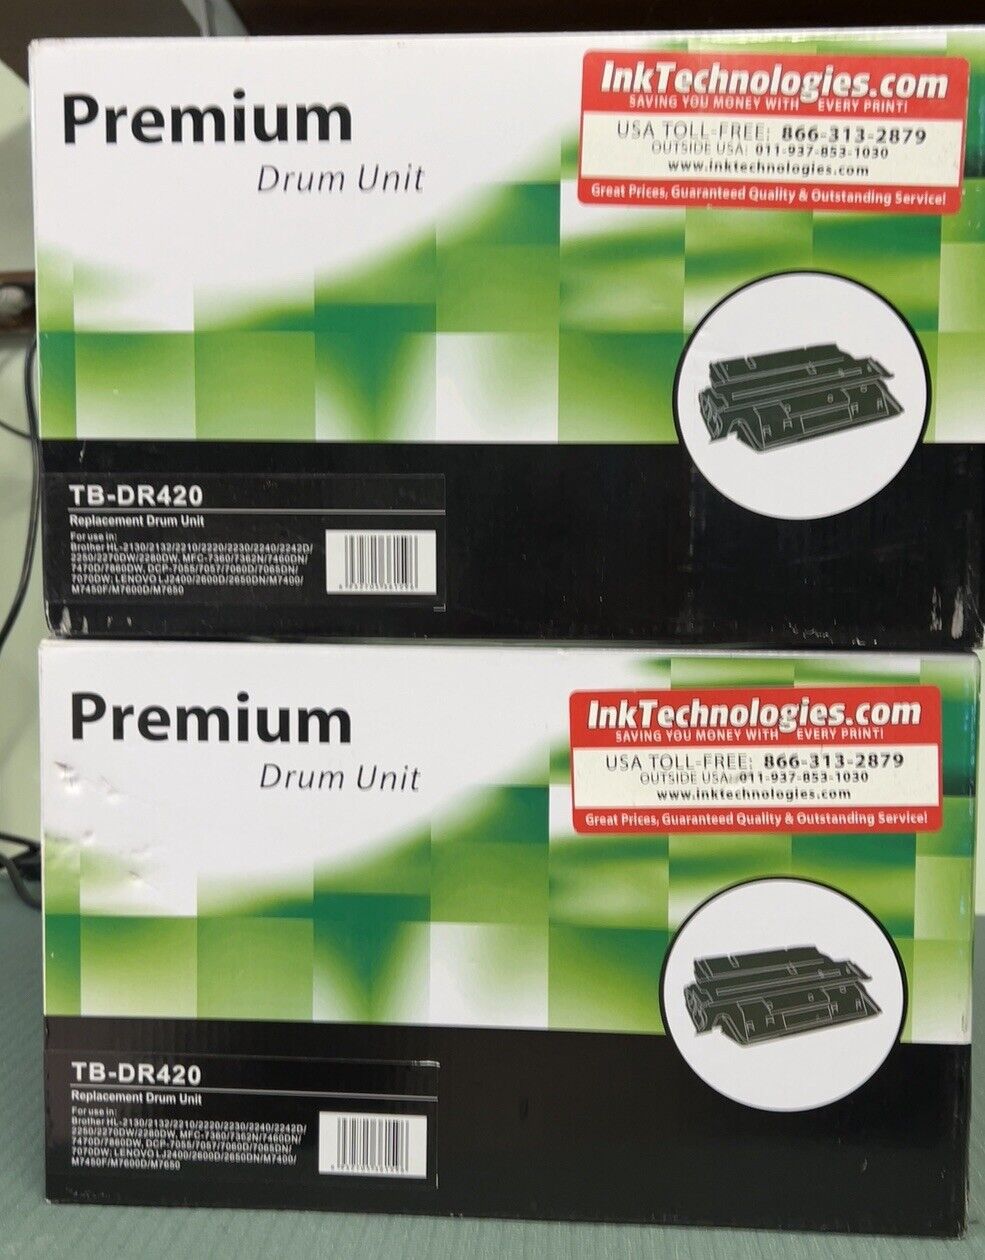 Premium Drum Unit TB-DR420 for Laser Printer 2pc